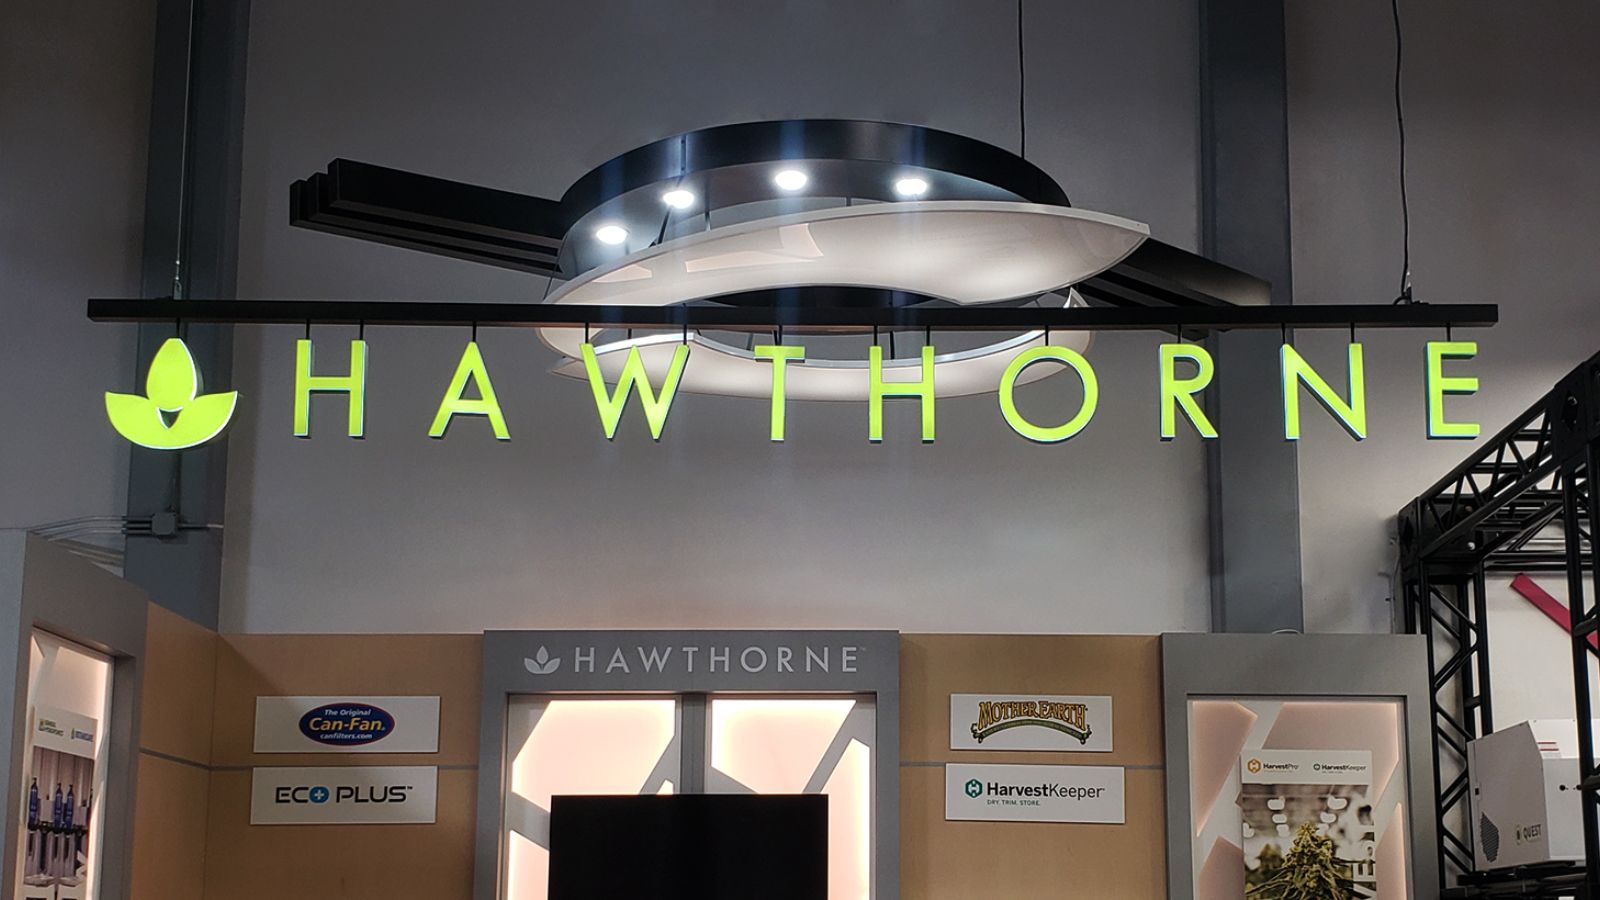 Hawthorne custom signage